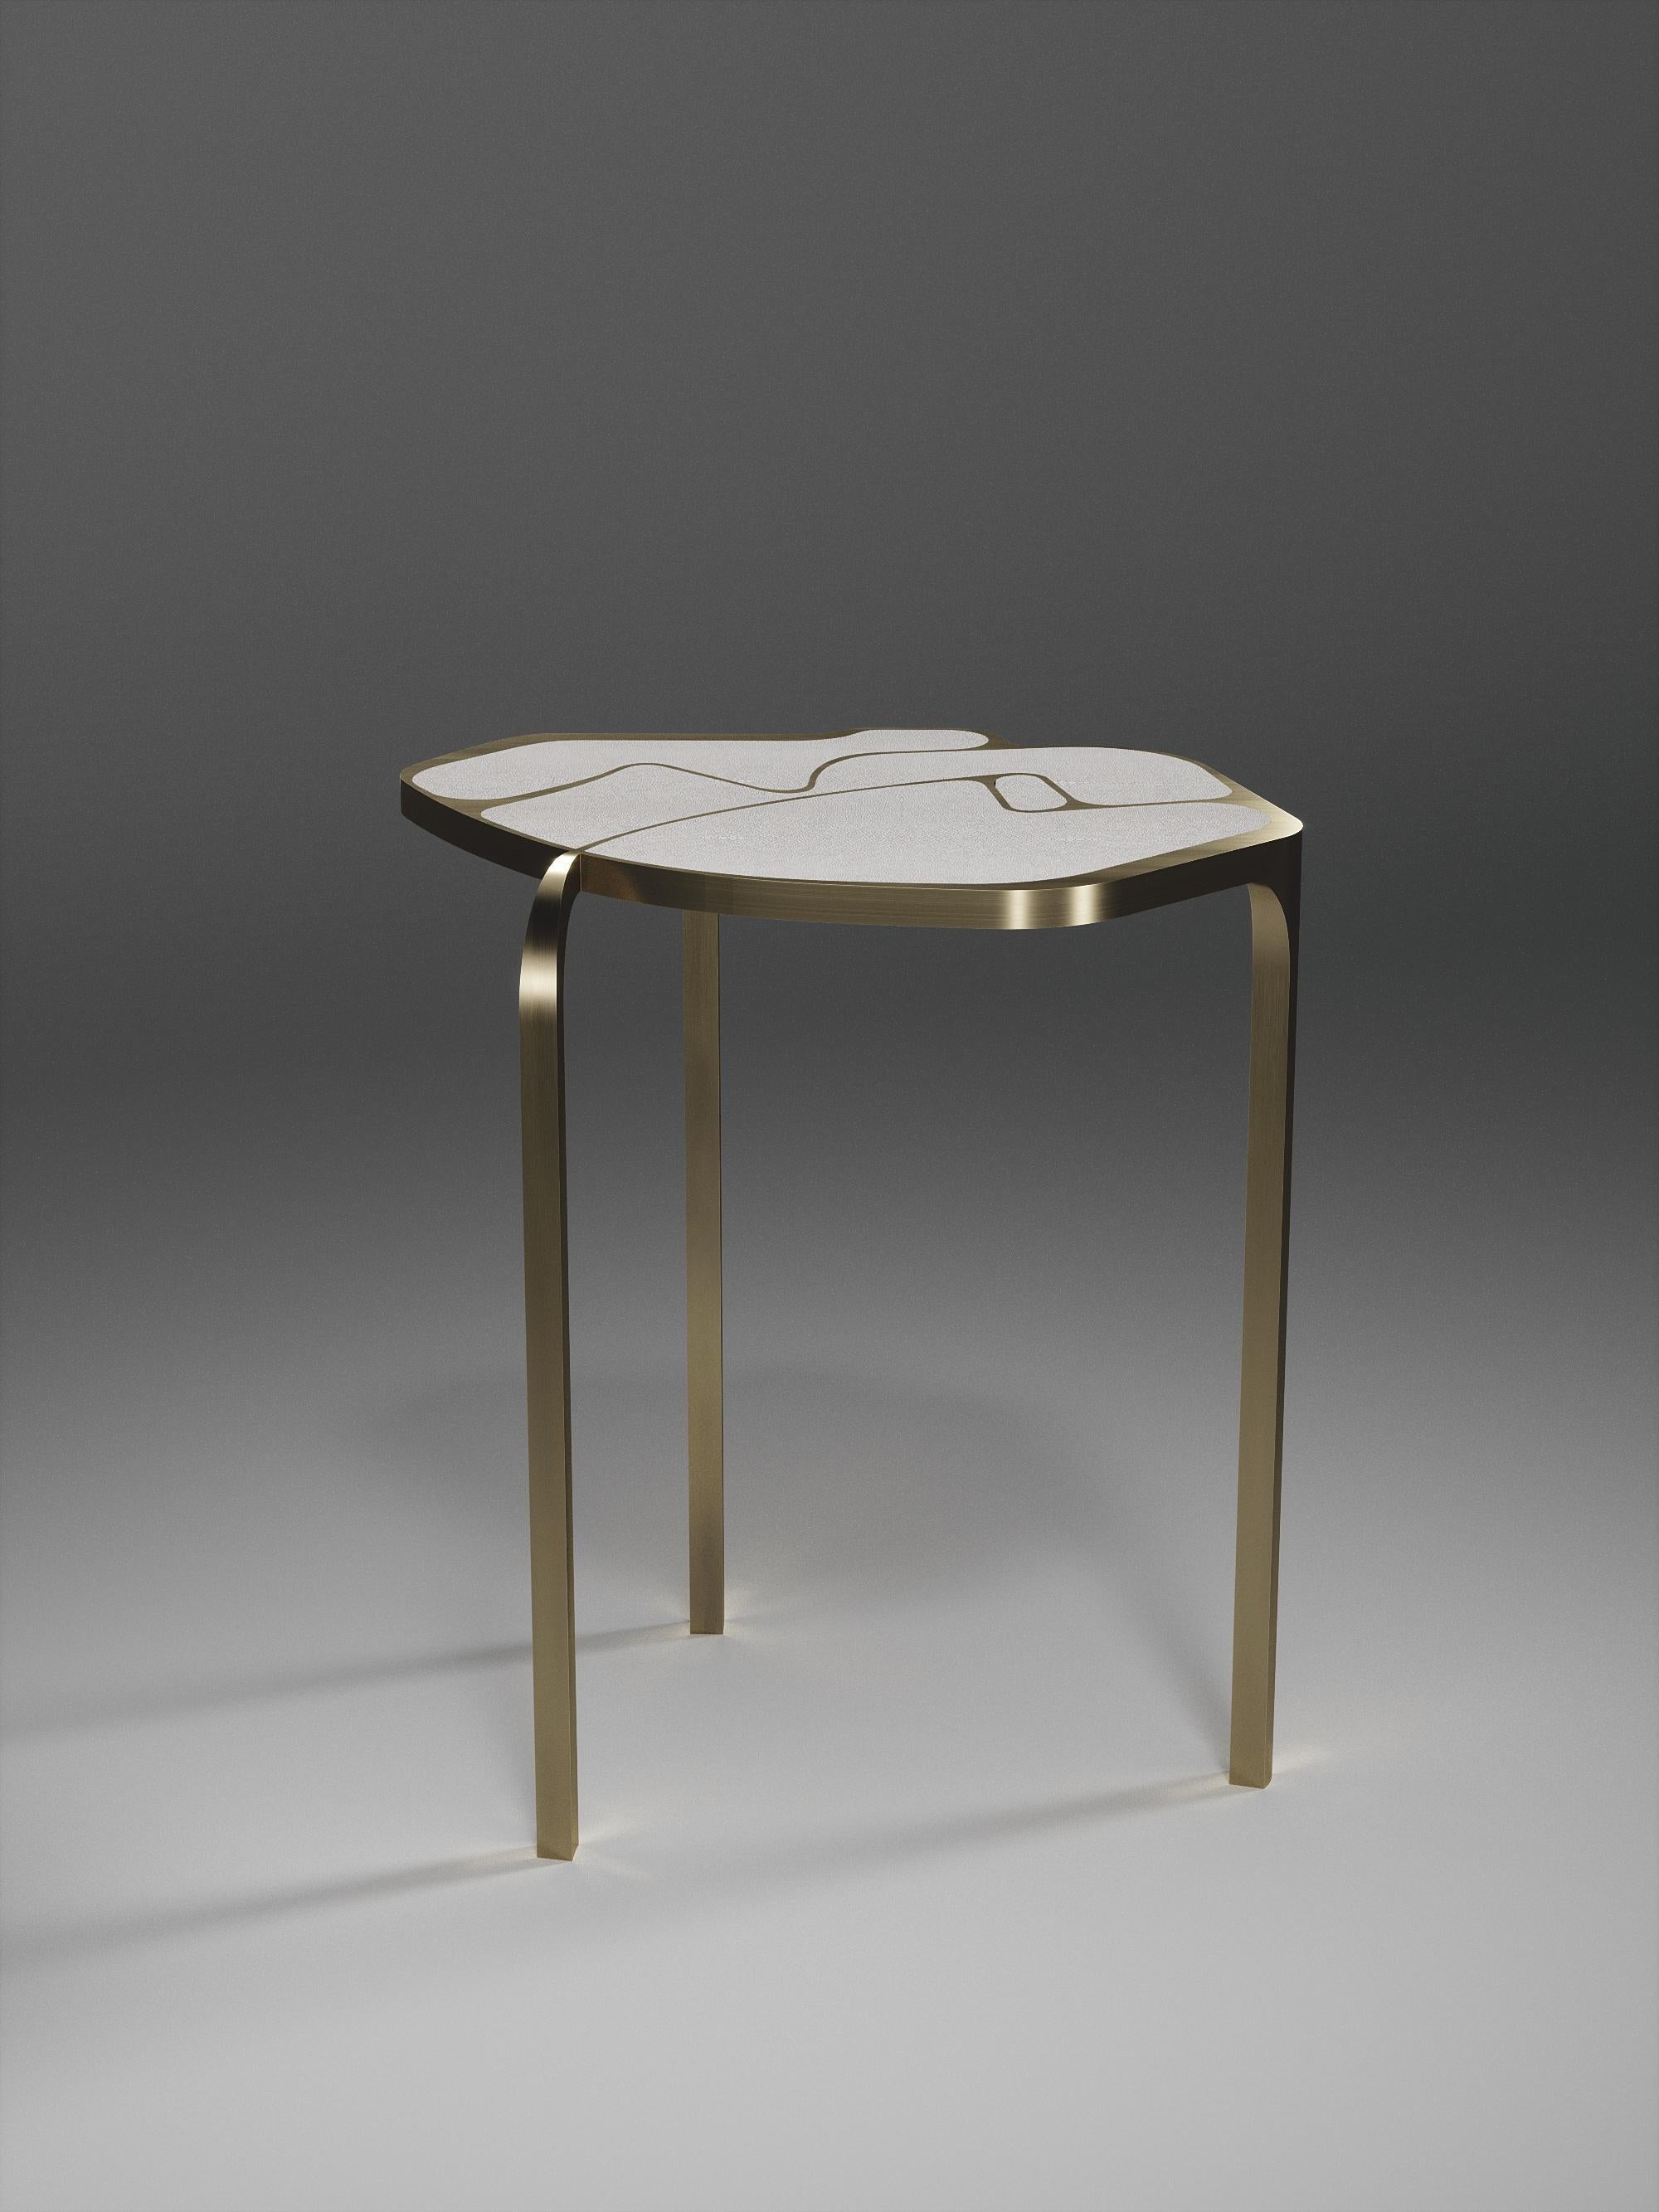 La table d'appoint Cocteau de R & Y Augousti est une pièce unique en son genre. Cette pièce sculpturale et éthérée comporte des formes abstraites et des figures que l'on peut interpréter de différentes manières. Les inserts en laiton bronze-patiné